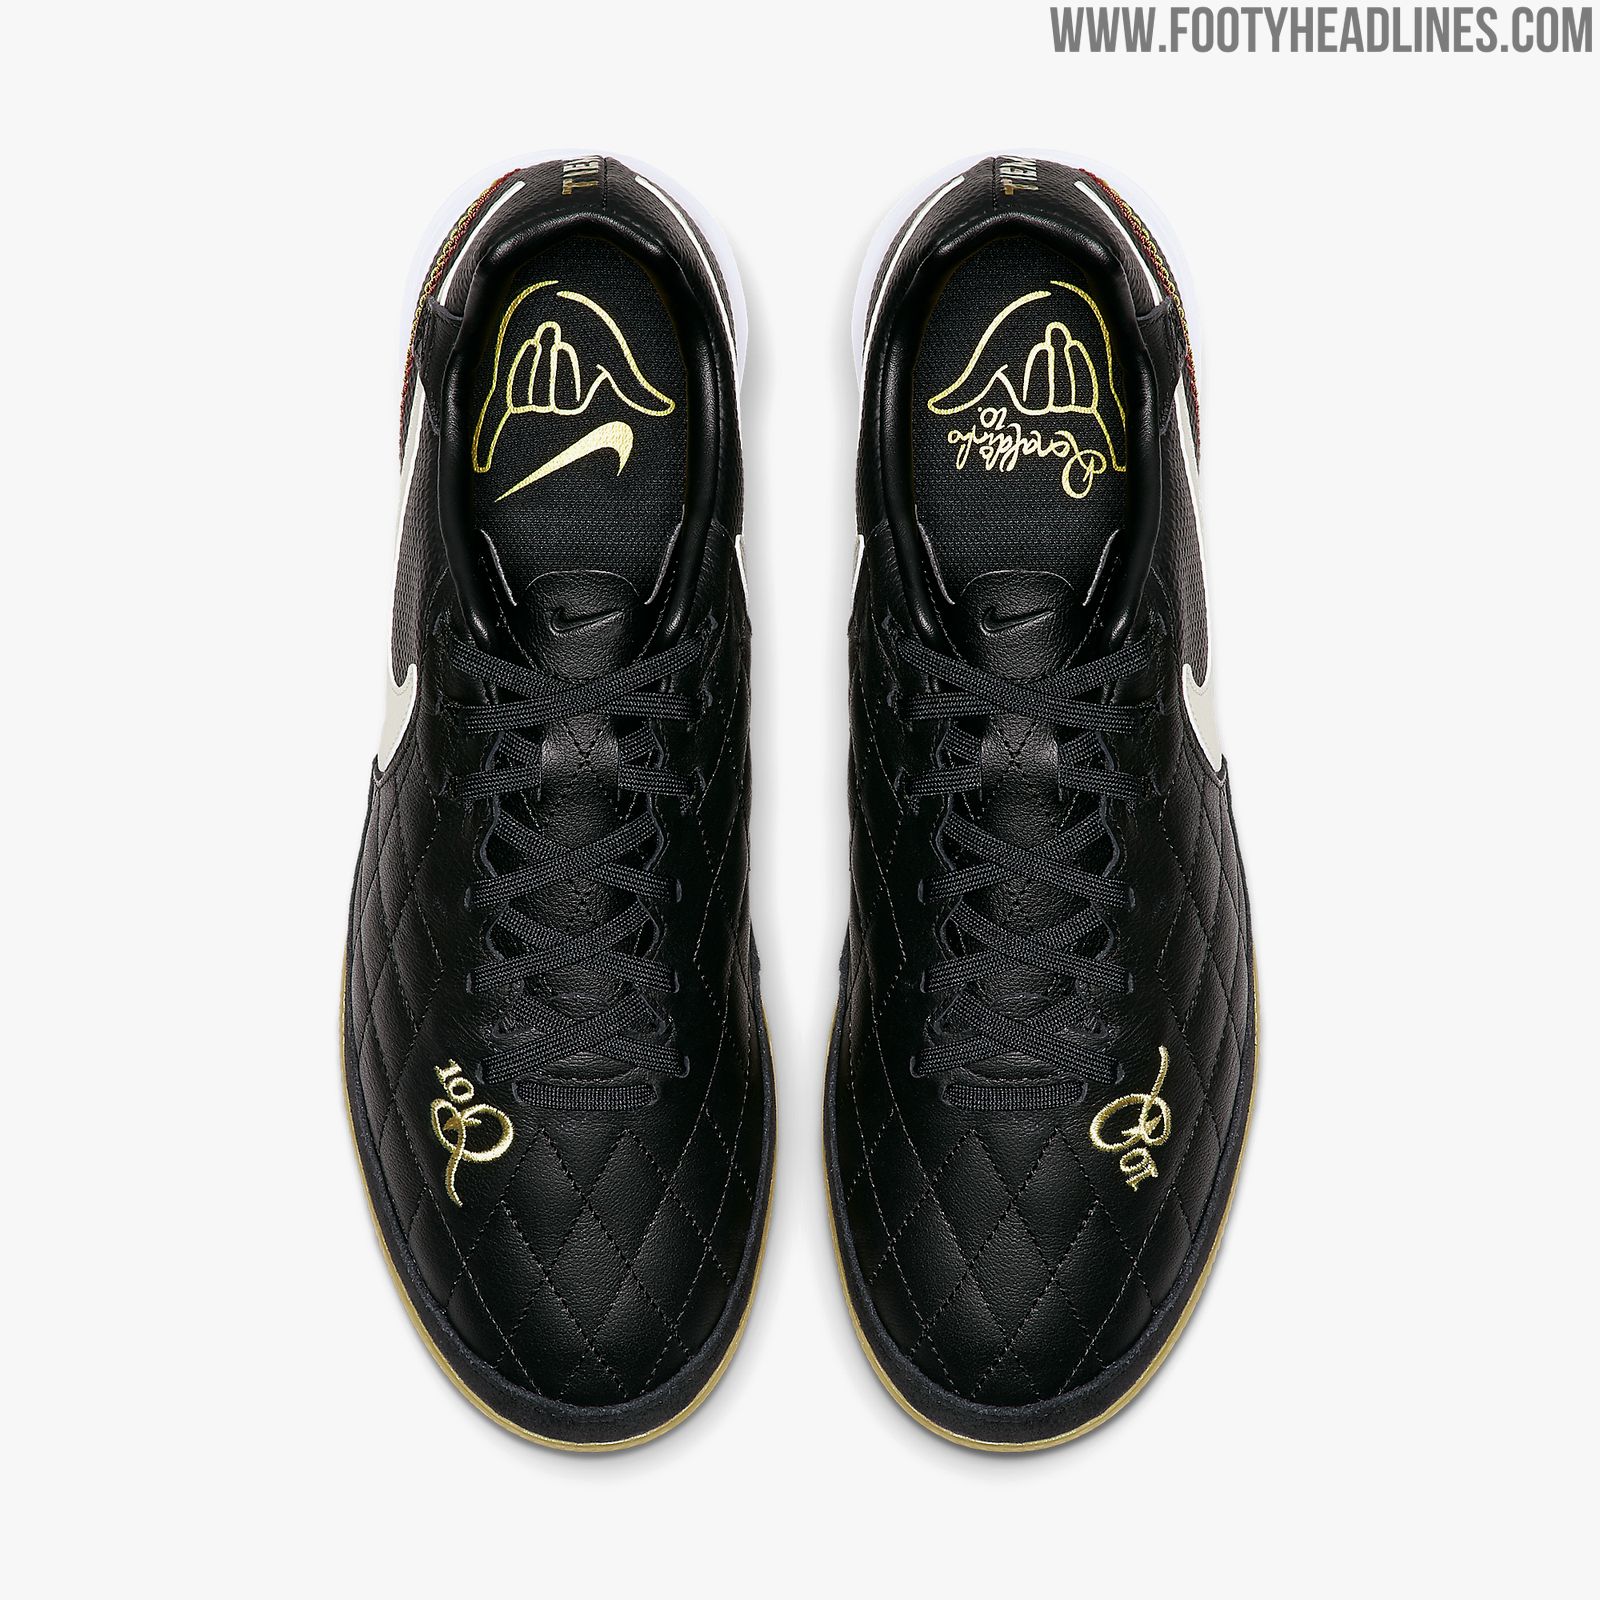 Sentimiento de culpa Potencial amanecer Stunning Black Nike Tiempo Ronaldinho 2019 Boots Released - Footy Headlines